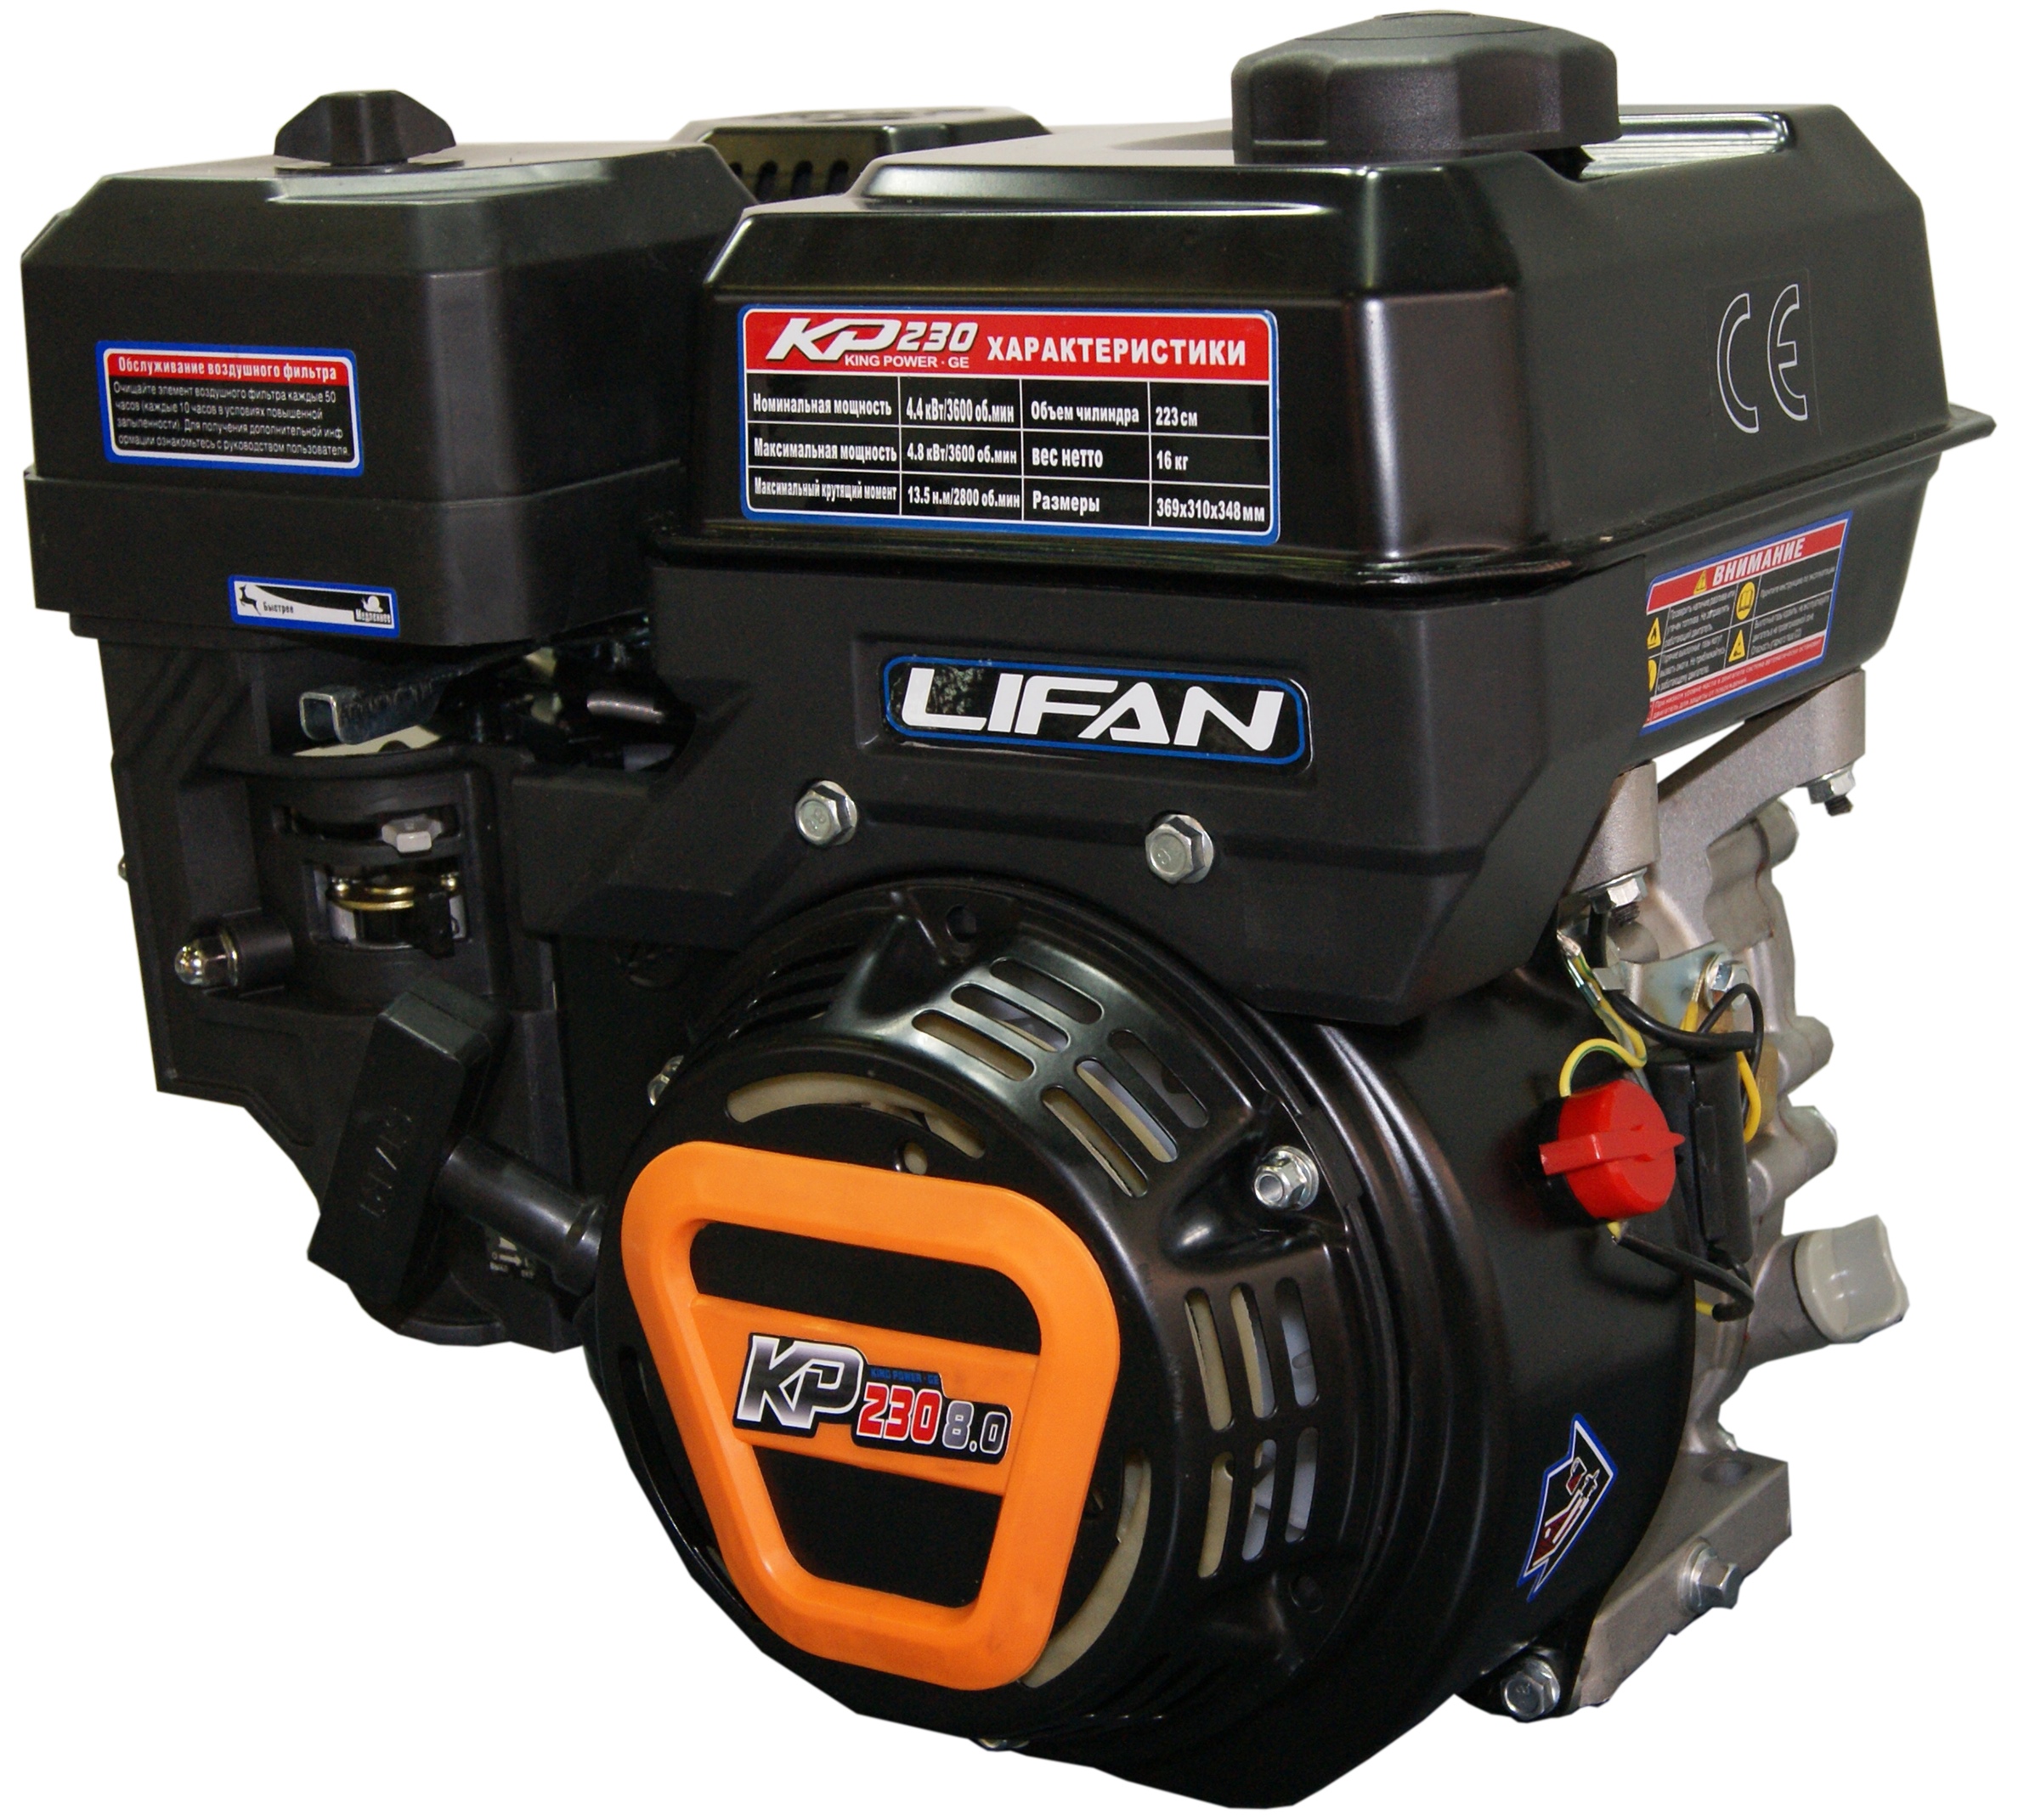 Двигатели Lifan (158 товаров в категории)